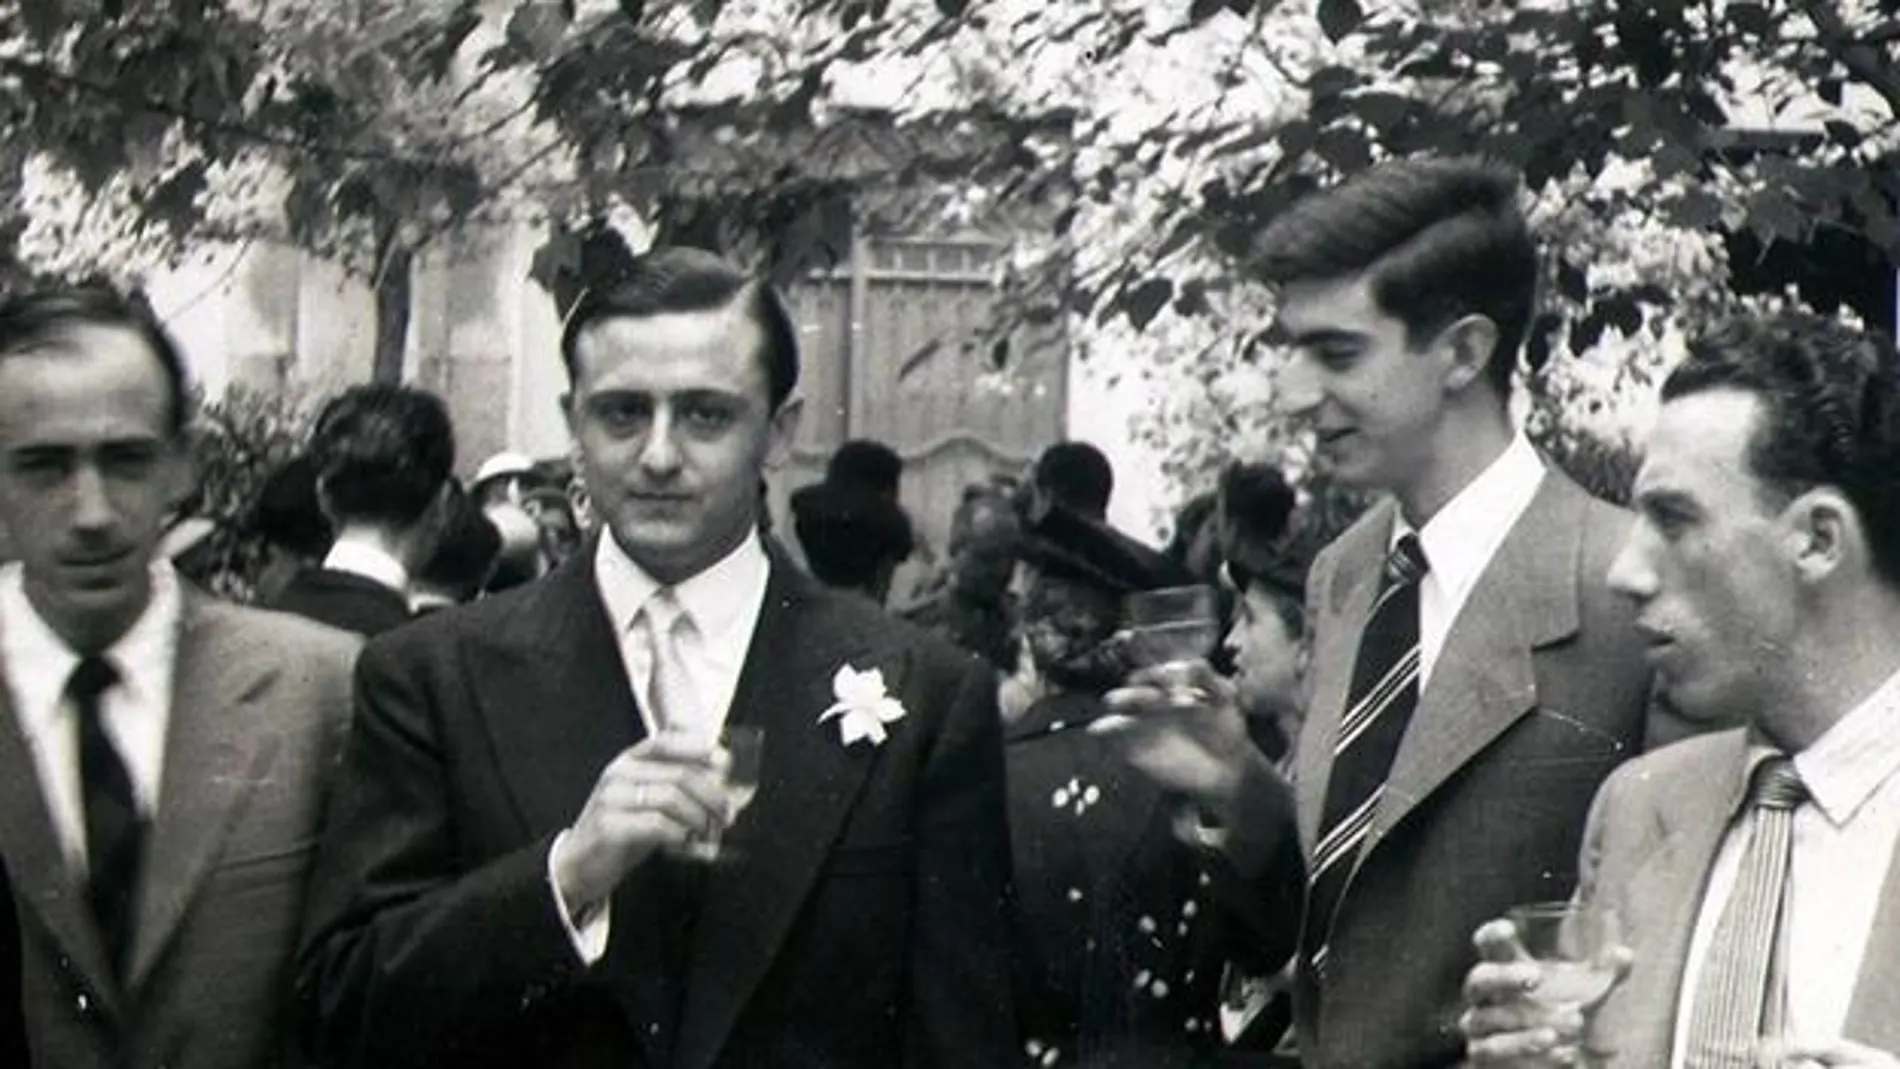 Los dos hombres del centro de la imagen son, a la derecha, Juan Benet, y, a la izquierda, Luis Martín-Santos en el día de su boda